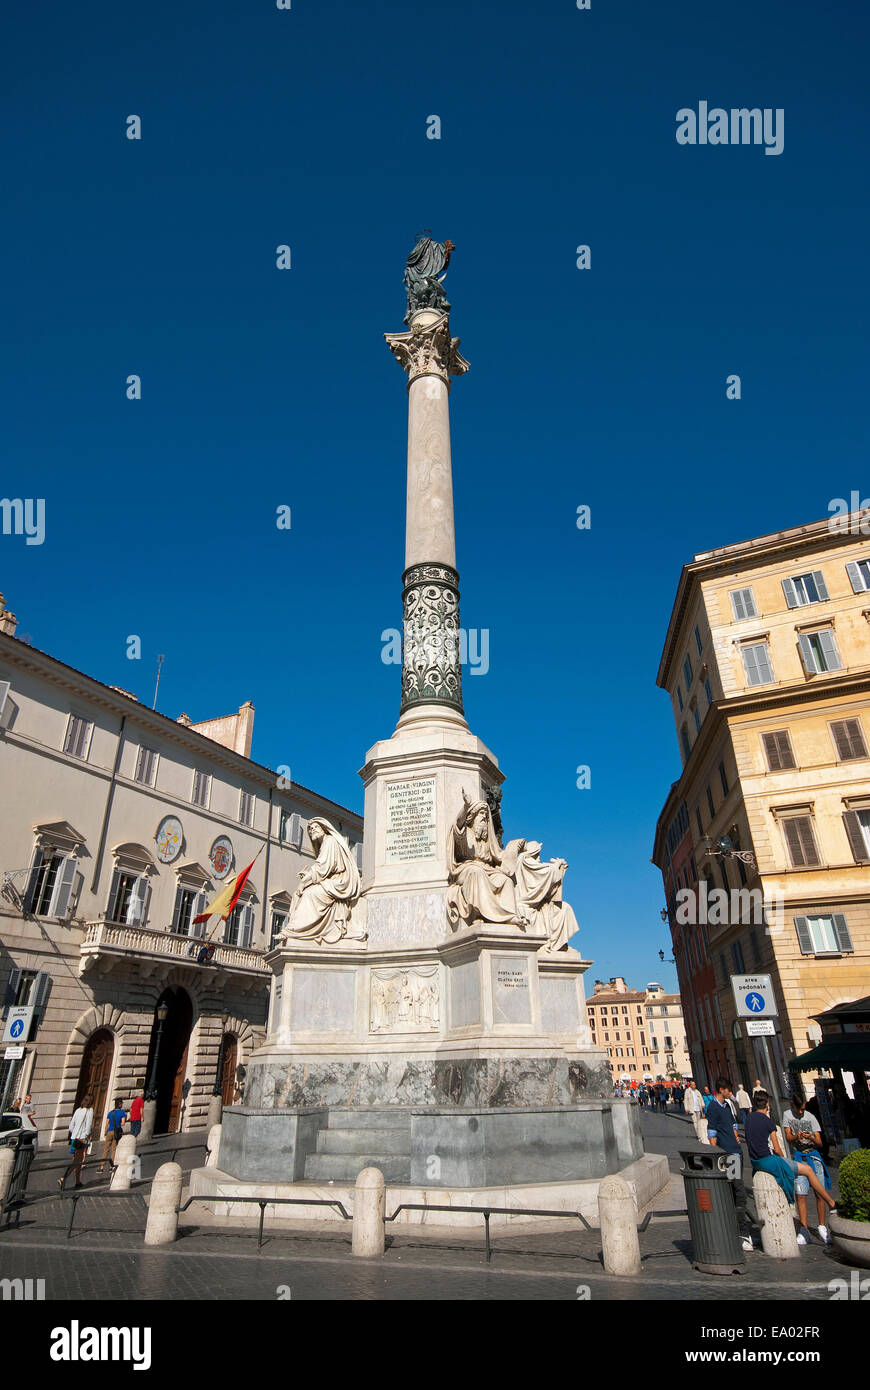 Colonna dell'Immacolata Concezione, column of the Virgin Mary, Rome , Italy Stock Photo